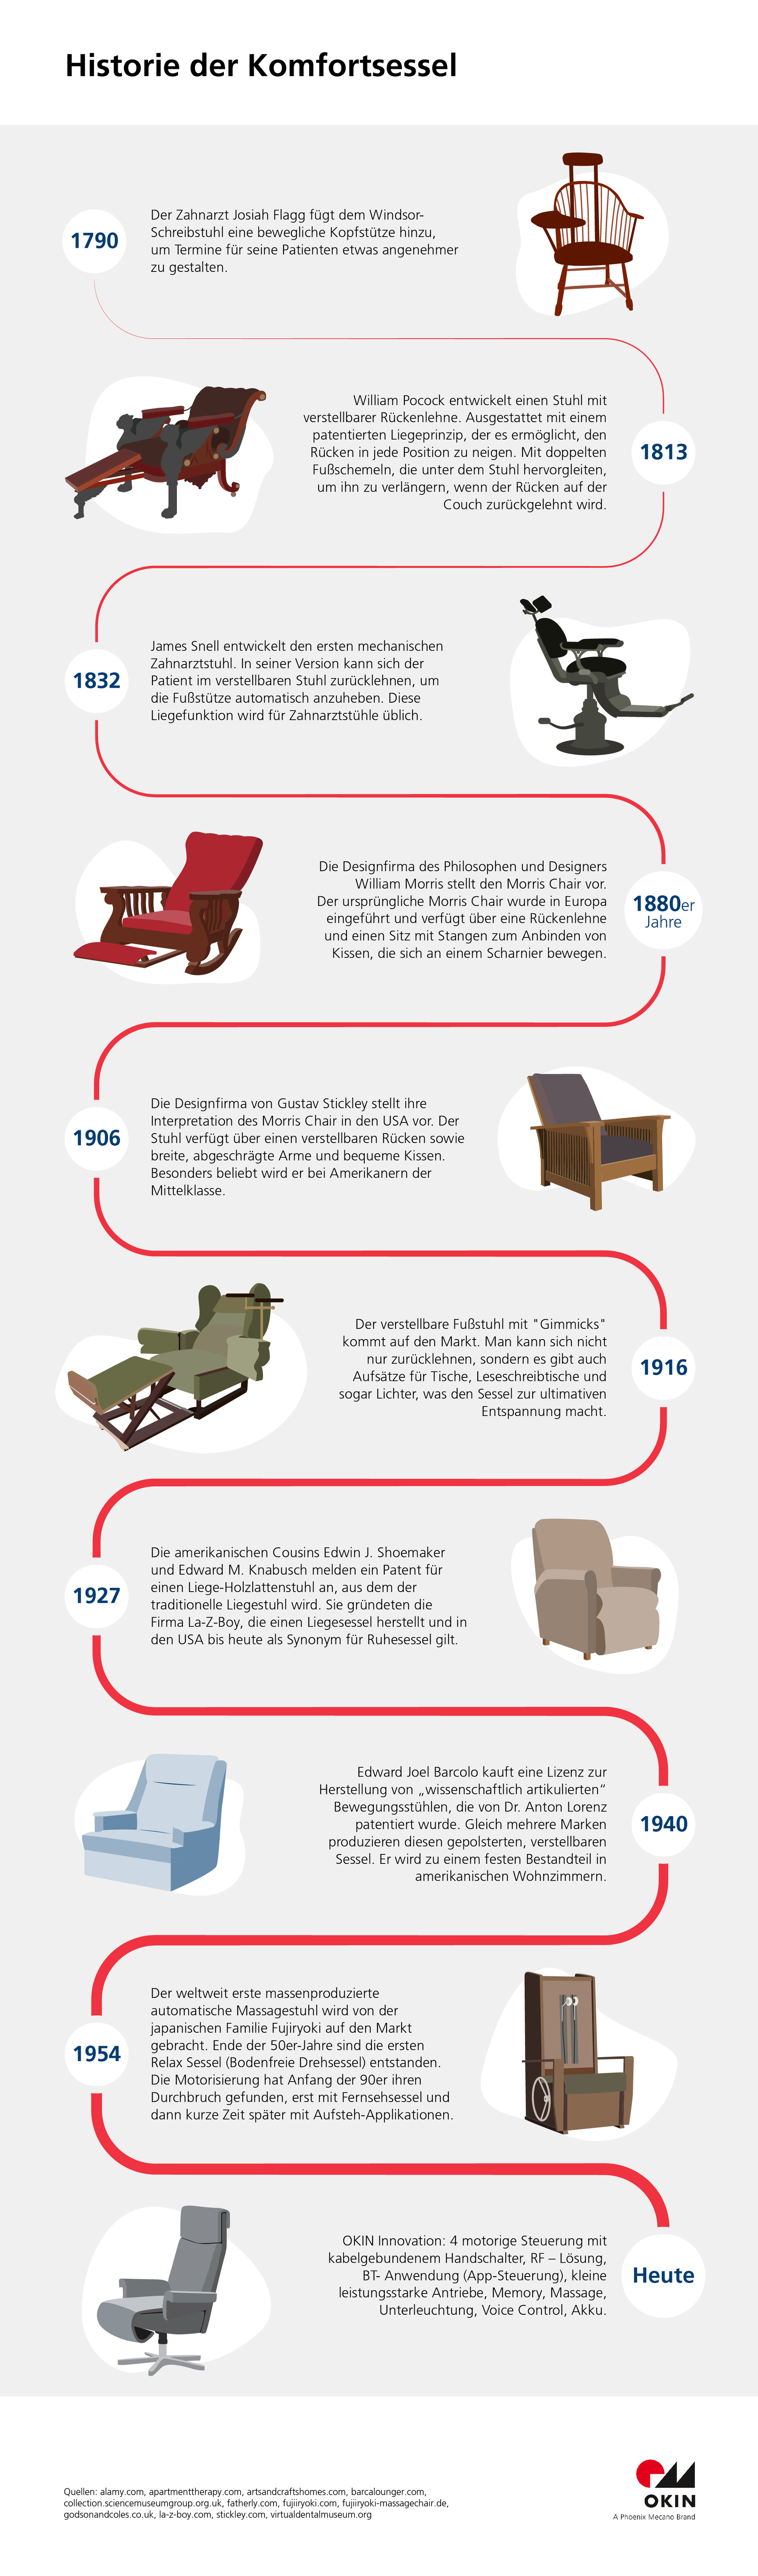 OKIN: Die Geschichte des Sessels